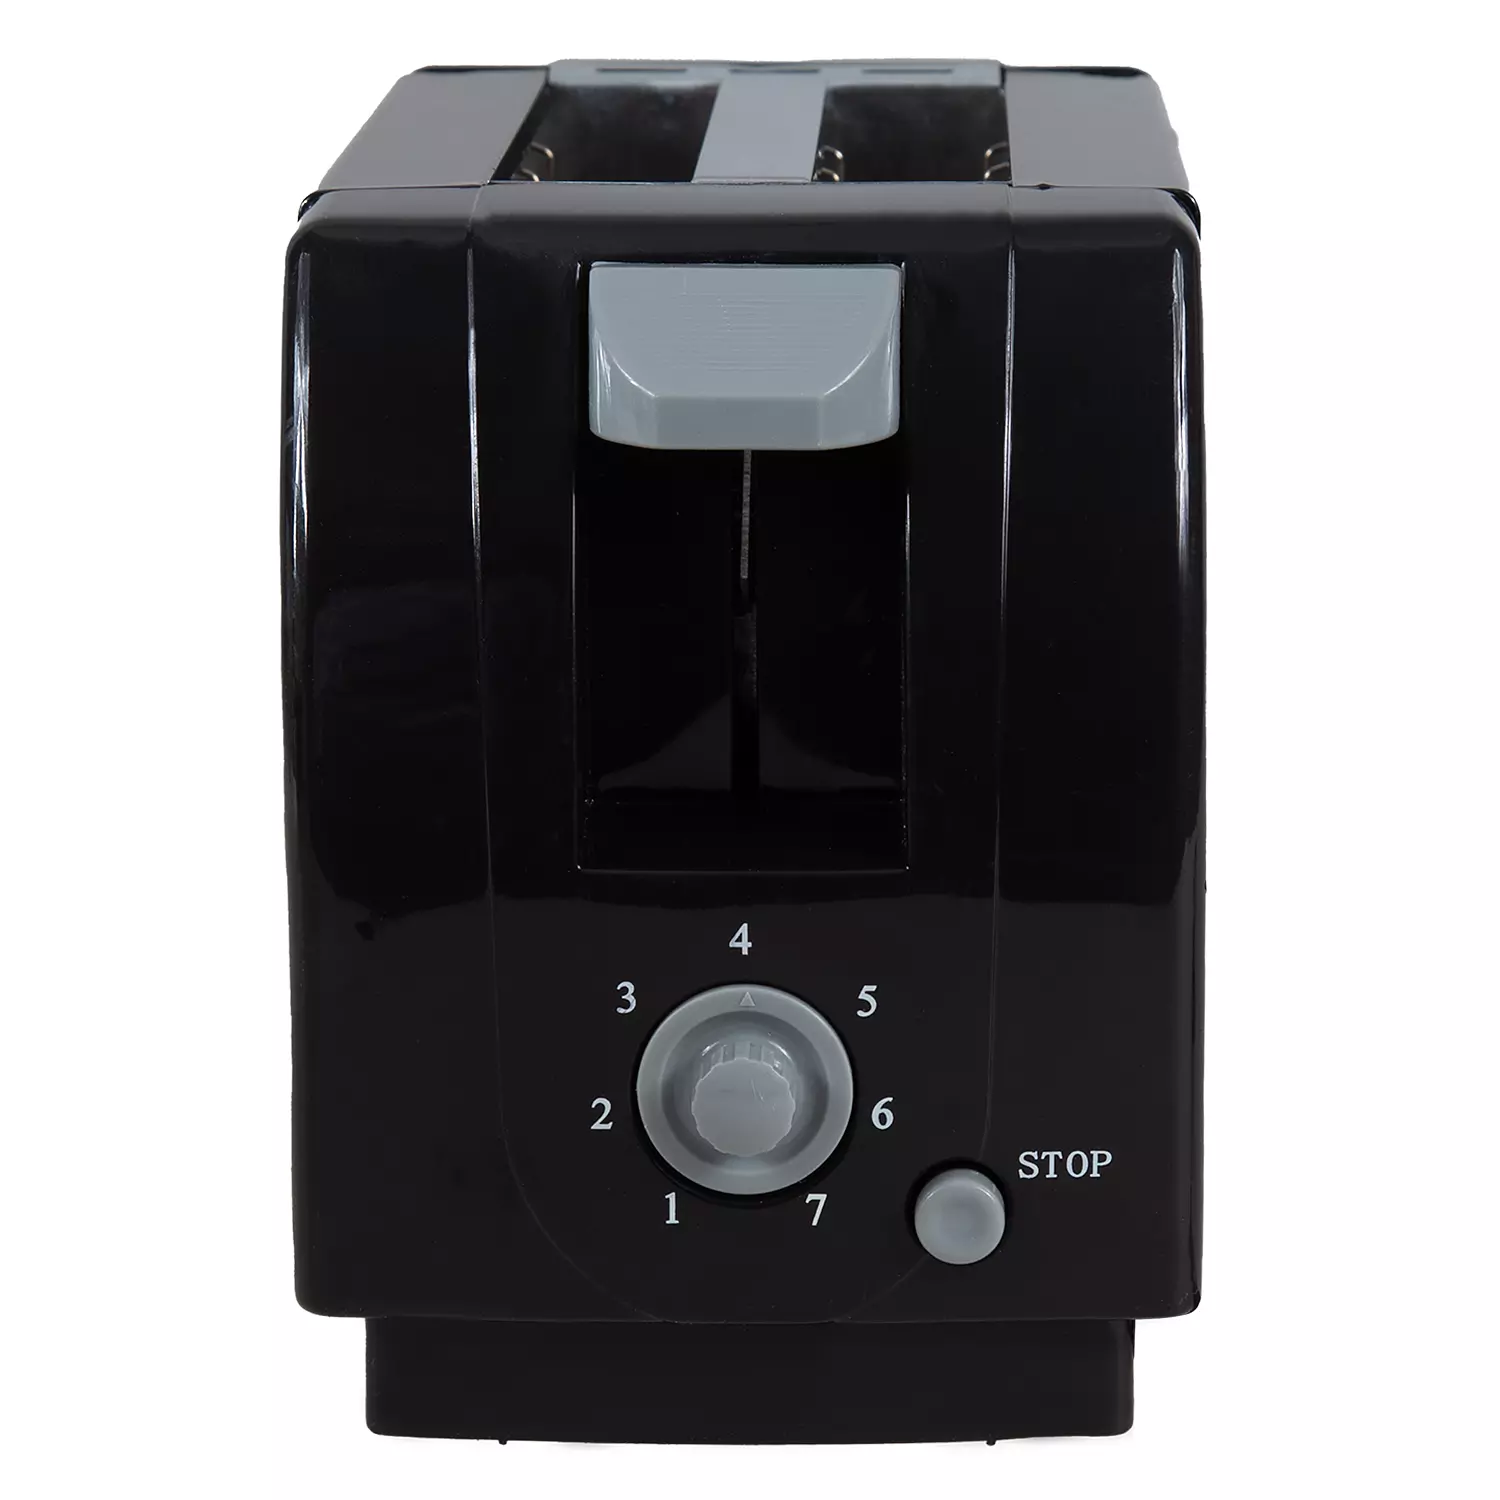 Hauz Basics -  2 slice toaster, black